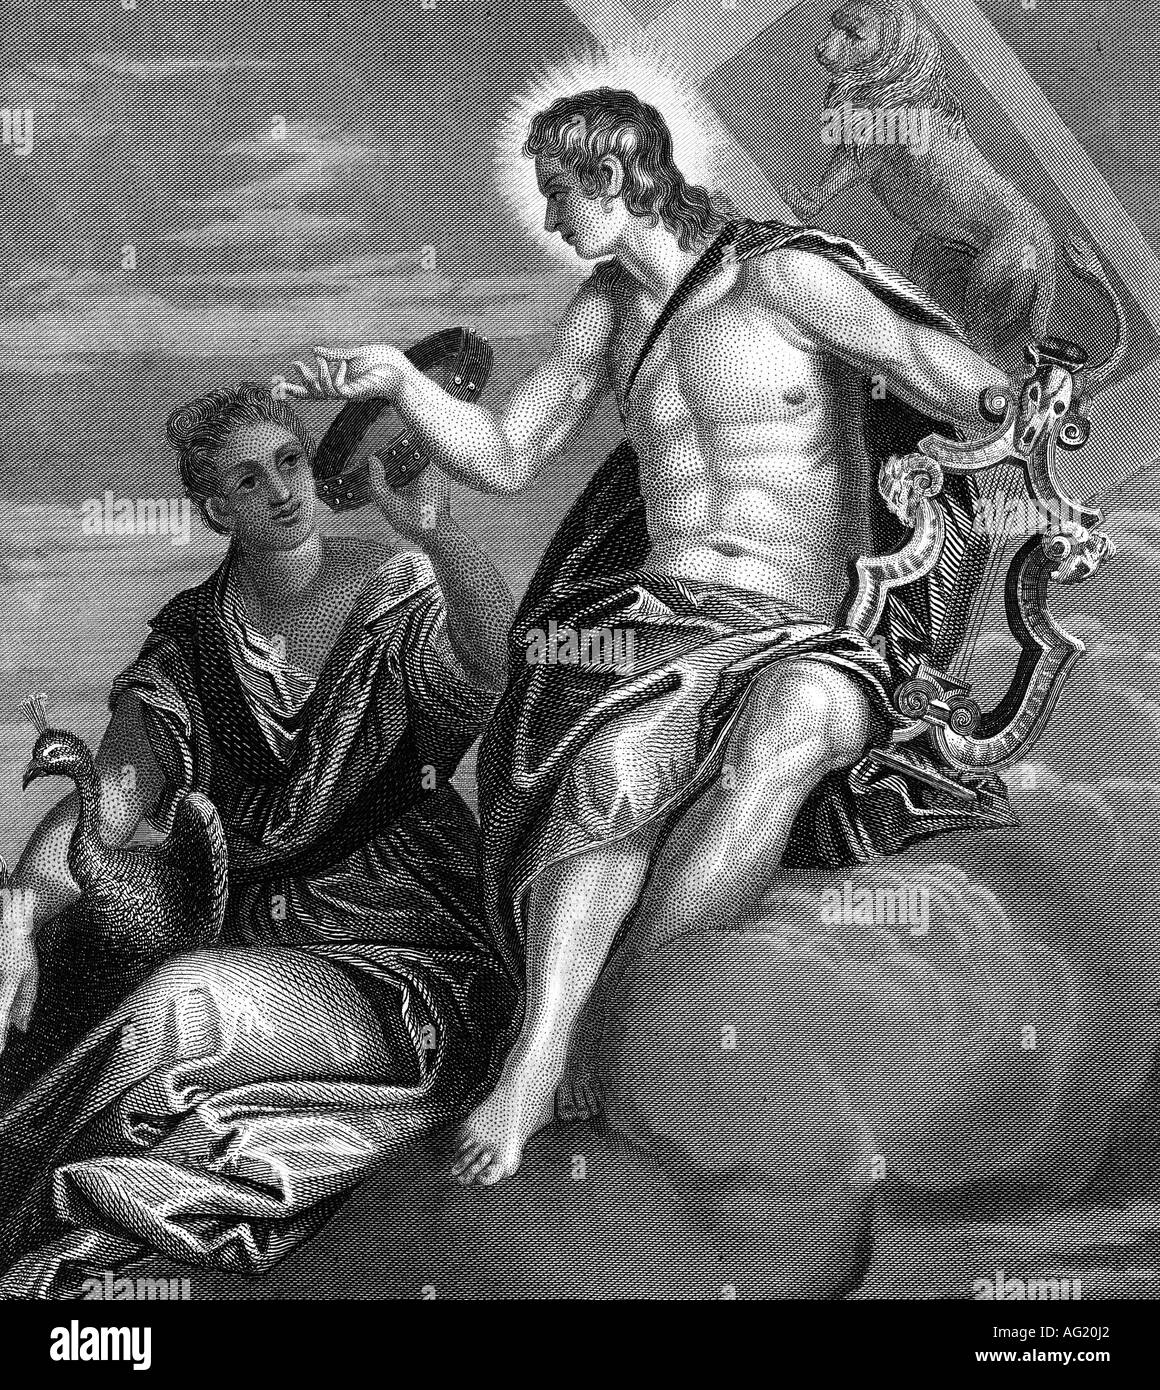 Apollon, Apoll, Apollo, griechische Gott, mit Hera, Stahlstich, 19. Jahrhundert, nach dem Gemälde von Paolo Veronese, Mythologie, Artist's Urheberrecht nicht gelöscht werden Stockfoto